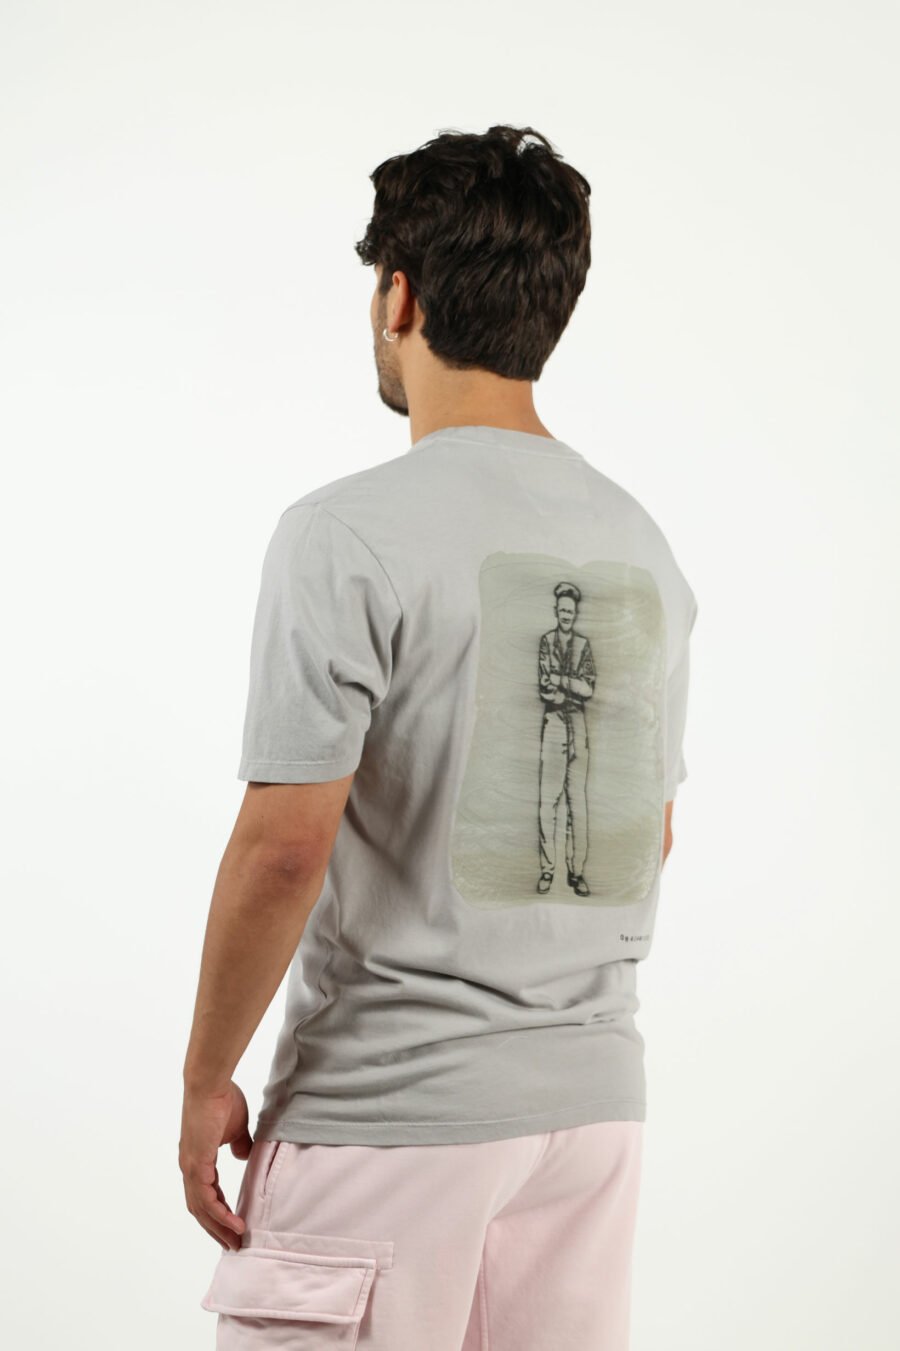 Camiseta gris con minilogo "cp" quemado - number13454